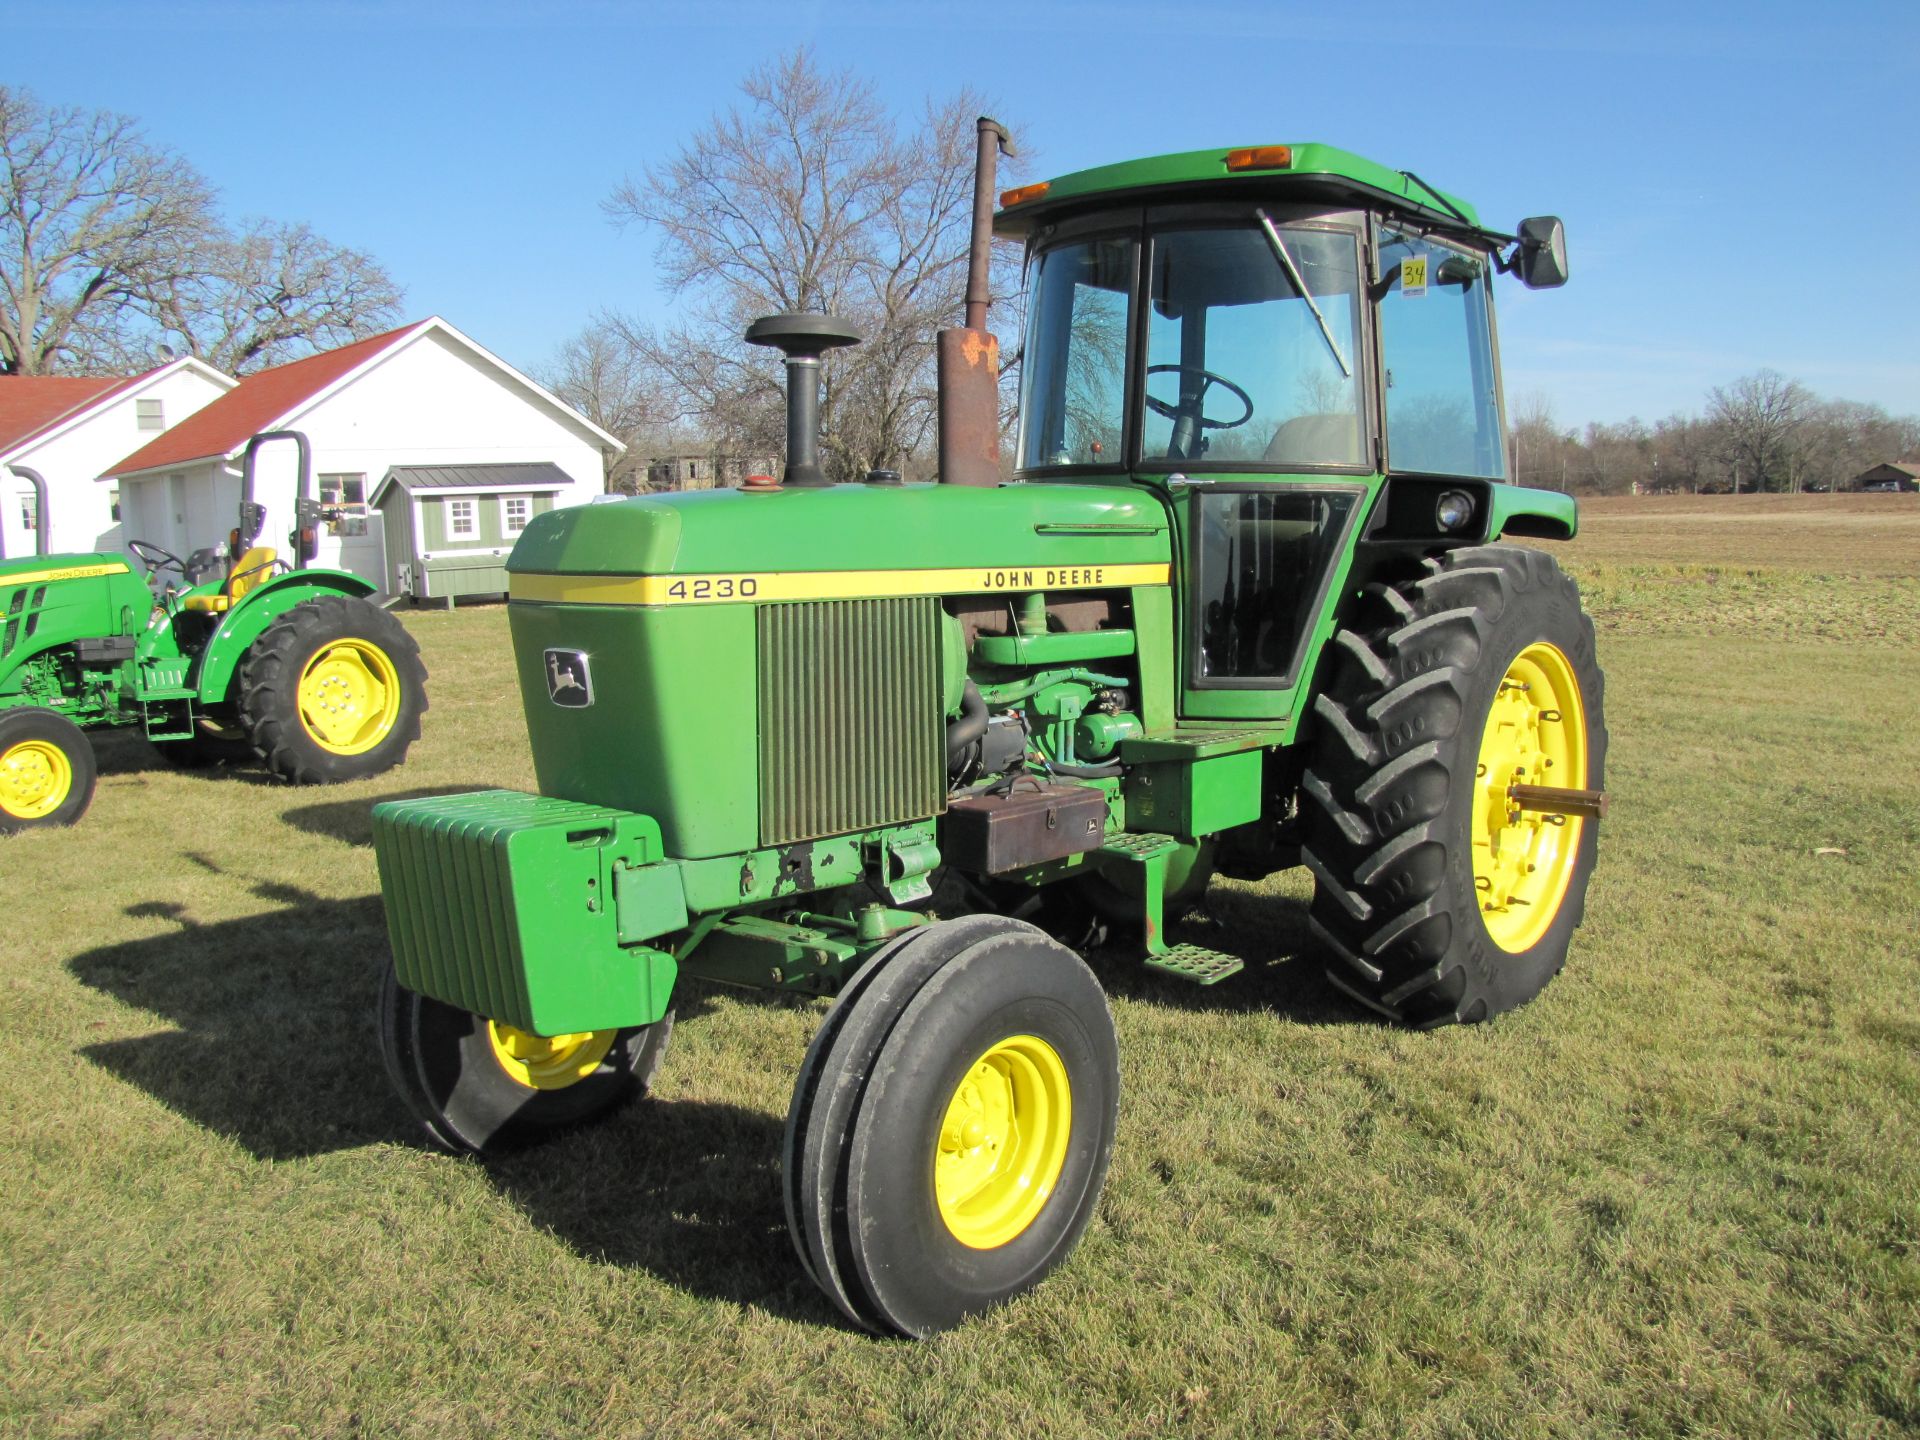 John Deere 4230 tractor